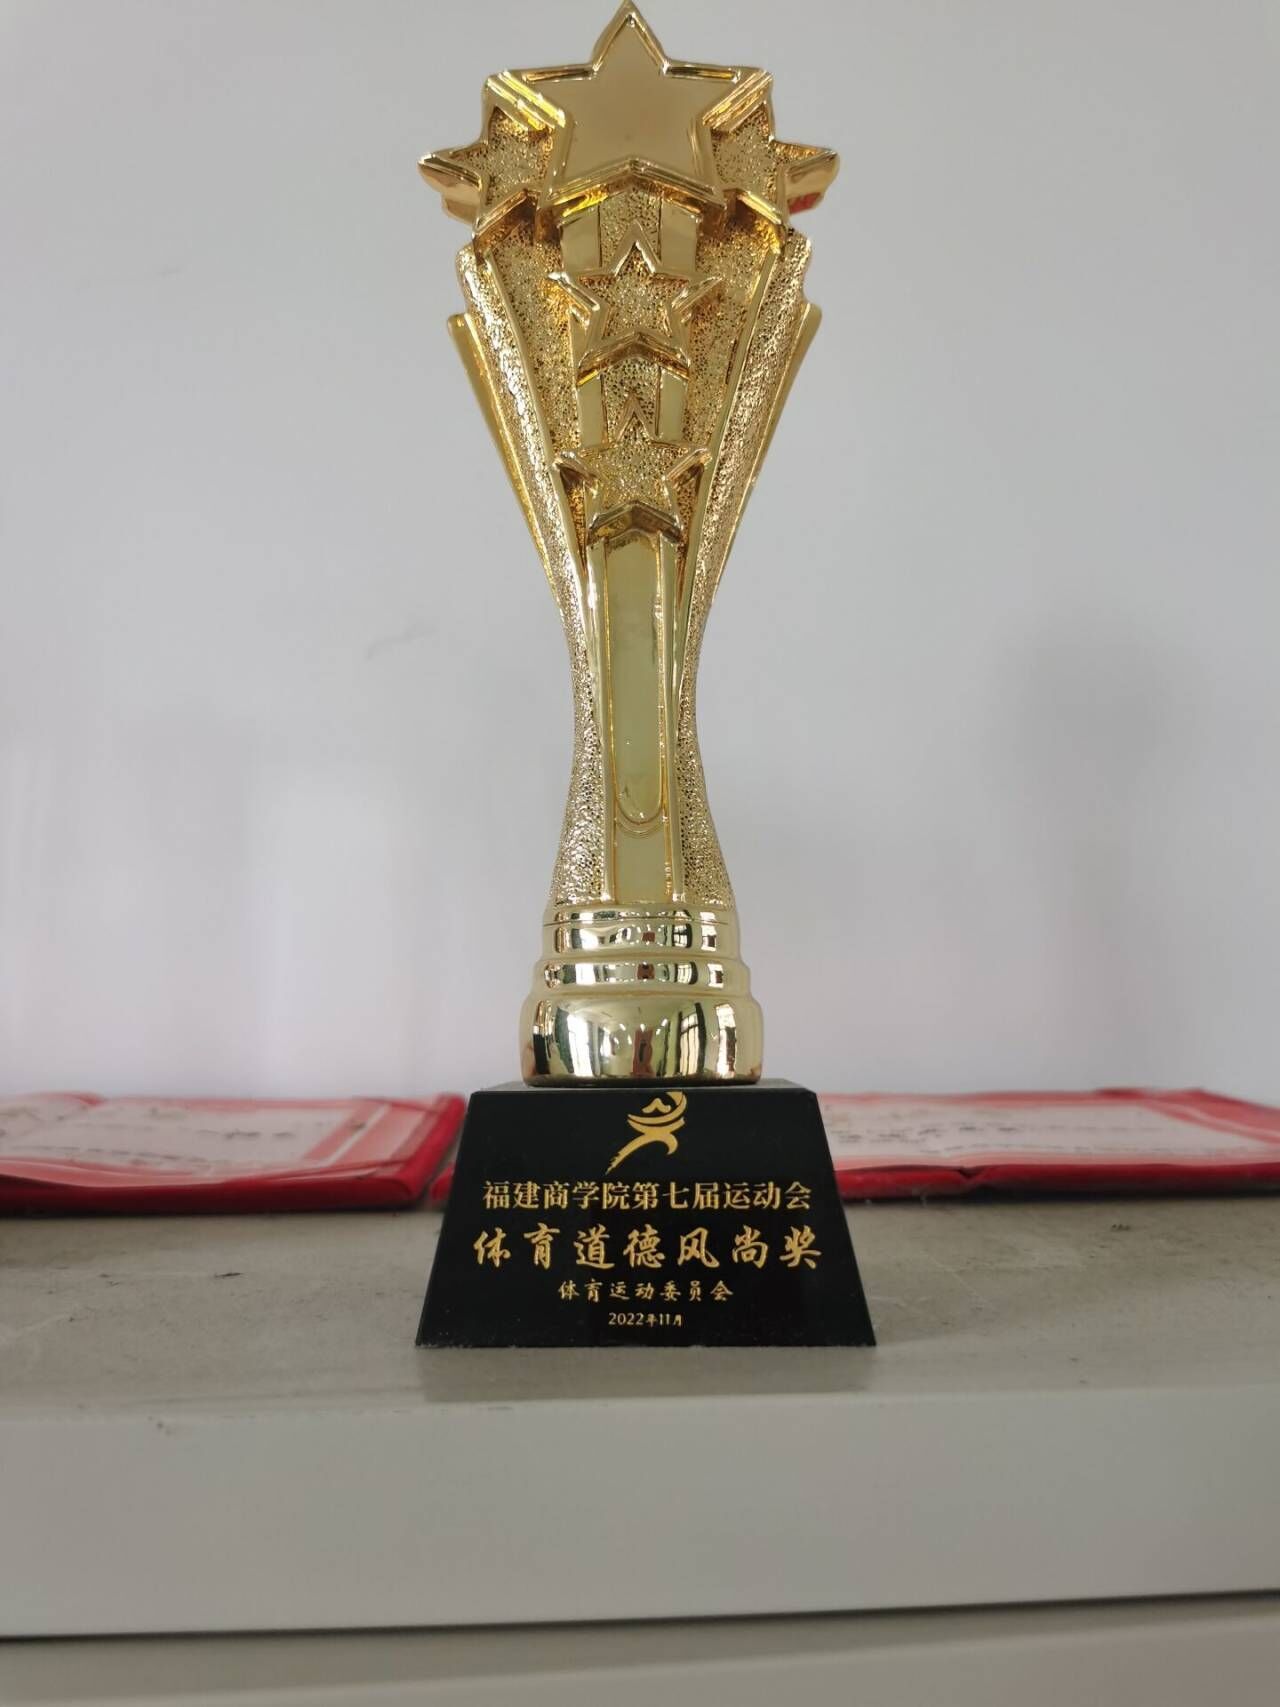 必赢唯一官方网站第七届运动会体育道德风尚奖